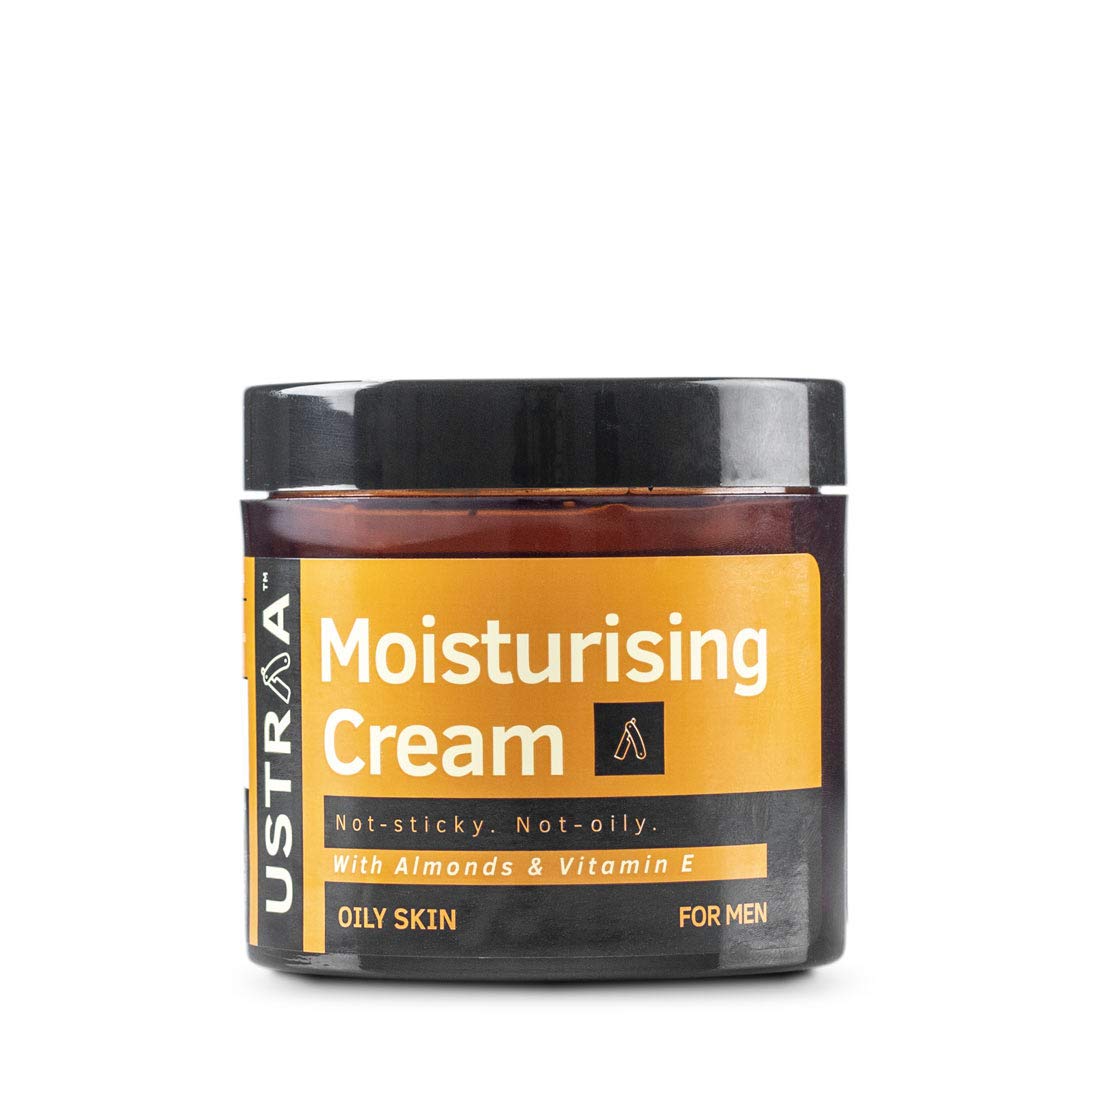 Ustraa Moisturising Cream for Oily Skin - 100g